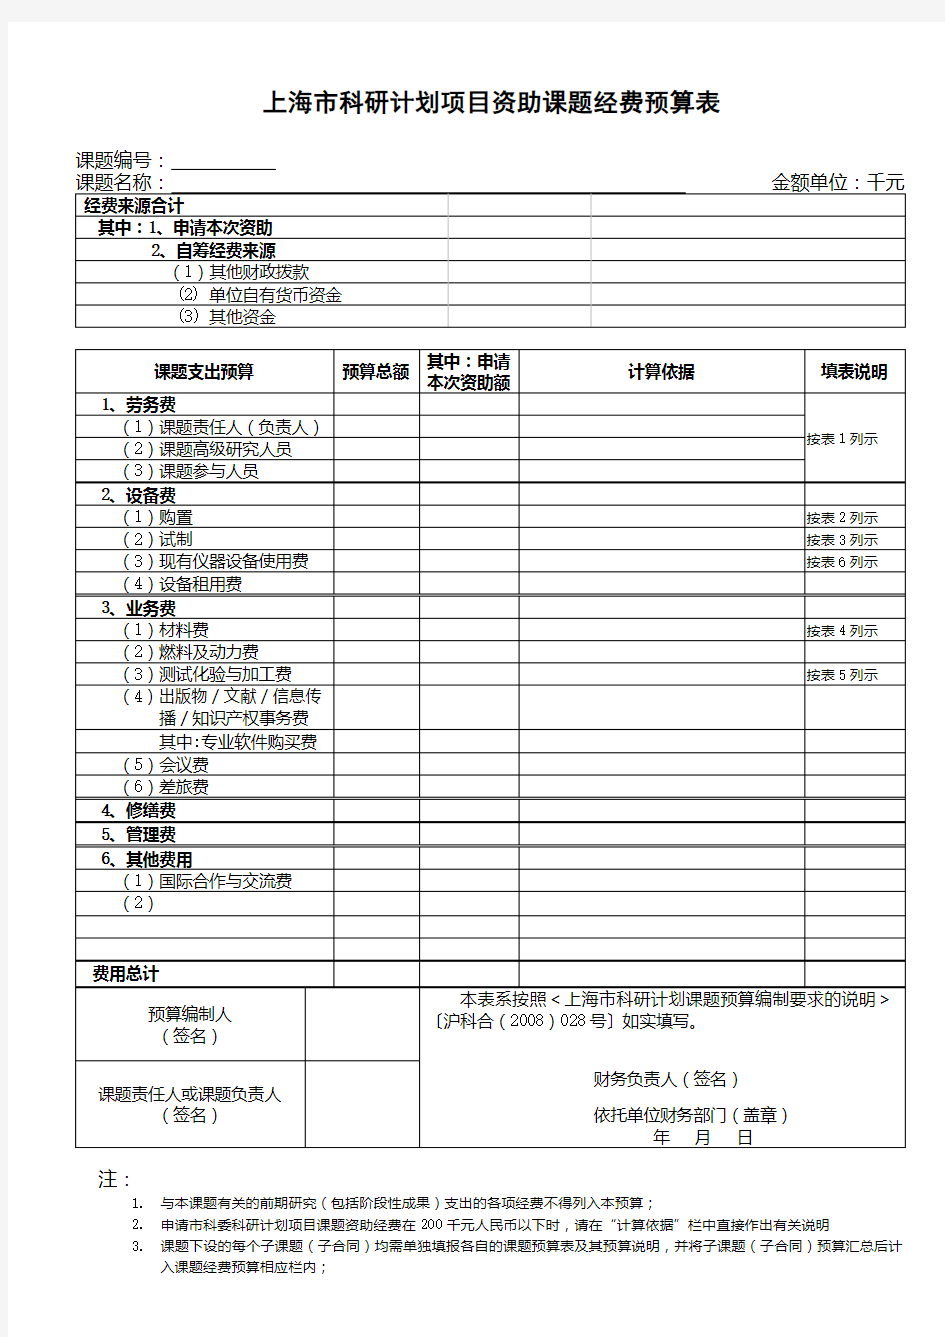 上海市科研计划项目资助课题经费预算表